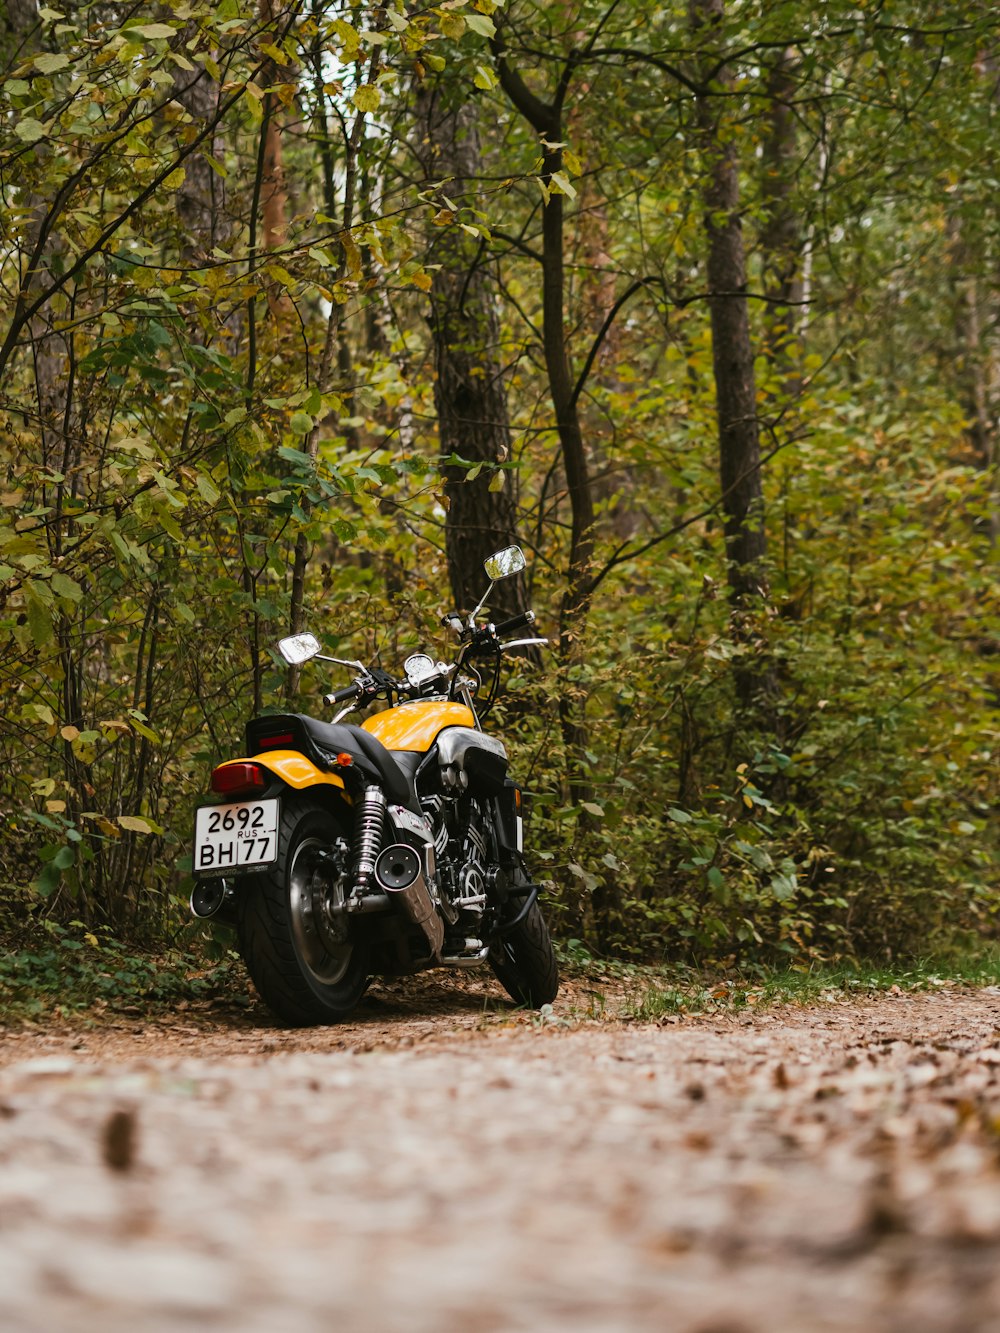 motocicleta amarilla y negra estacionada junto a altos árboles verdes